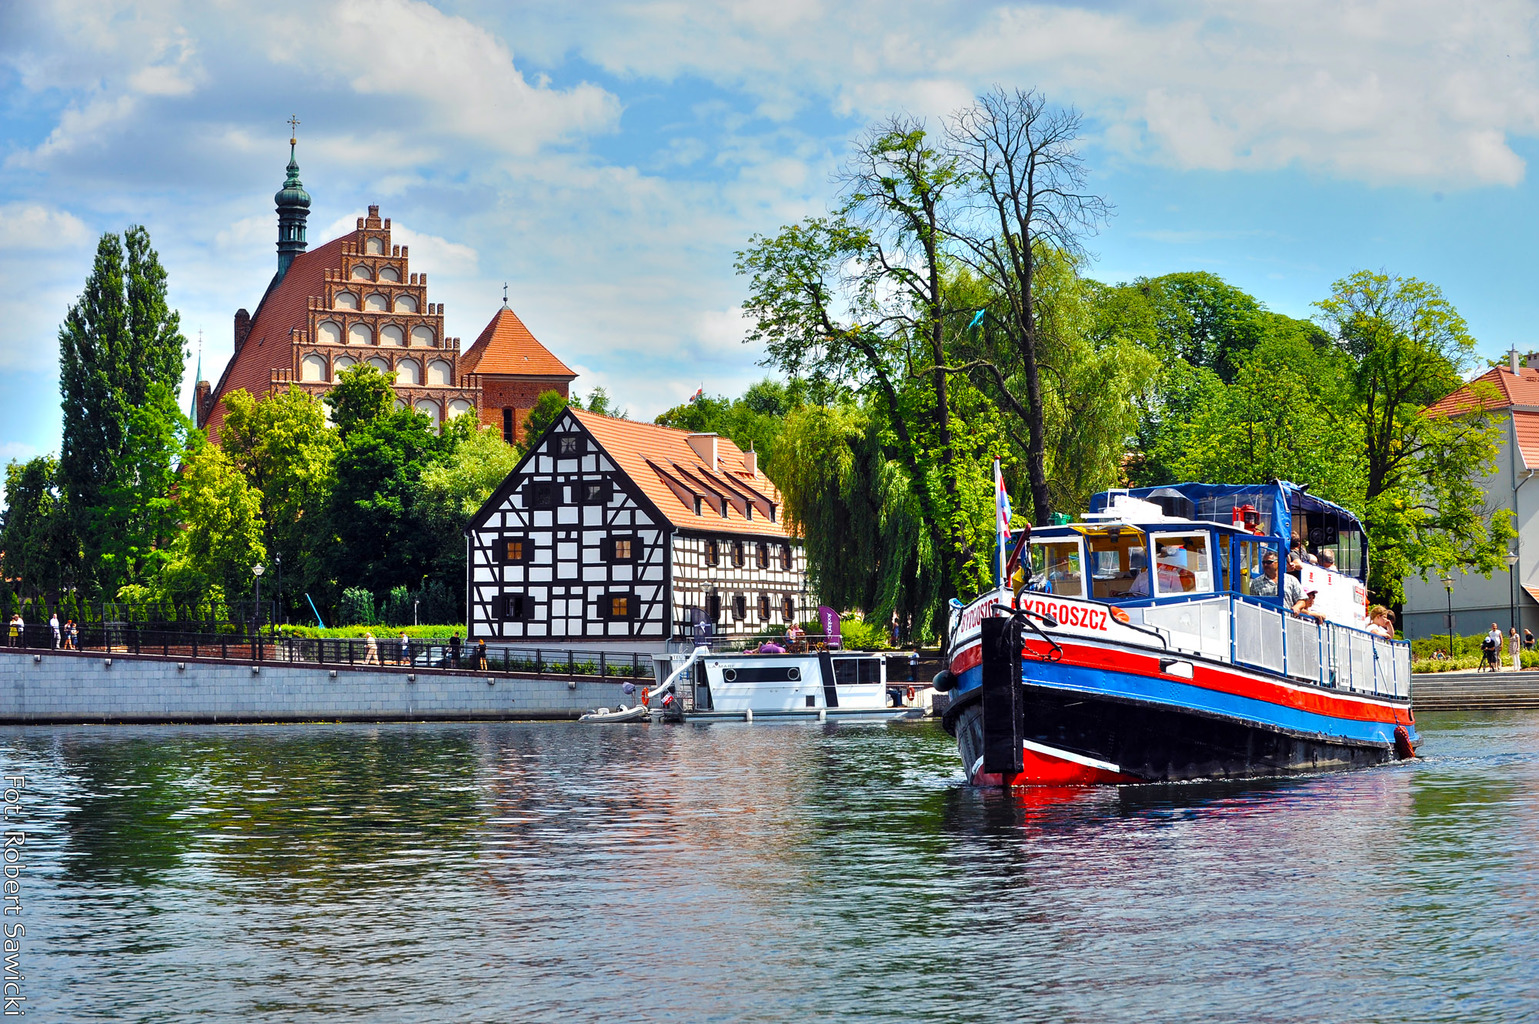 Bydgoszcz genomineerd voor de titel van European Best destination 2020